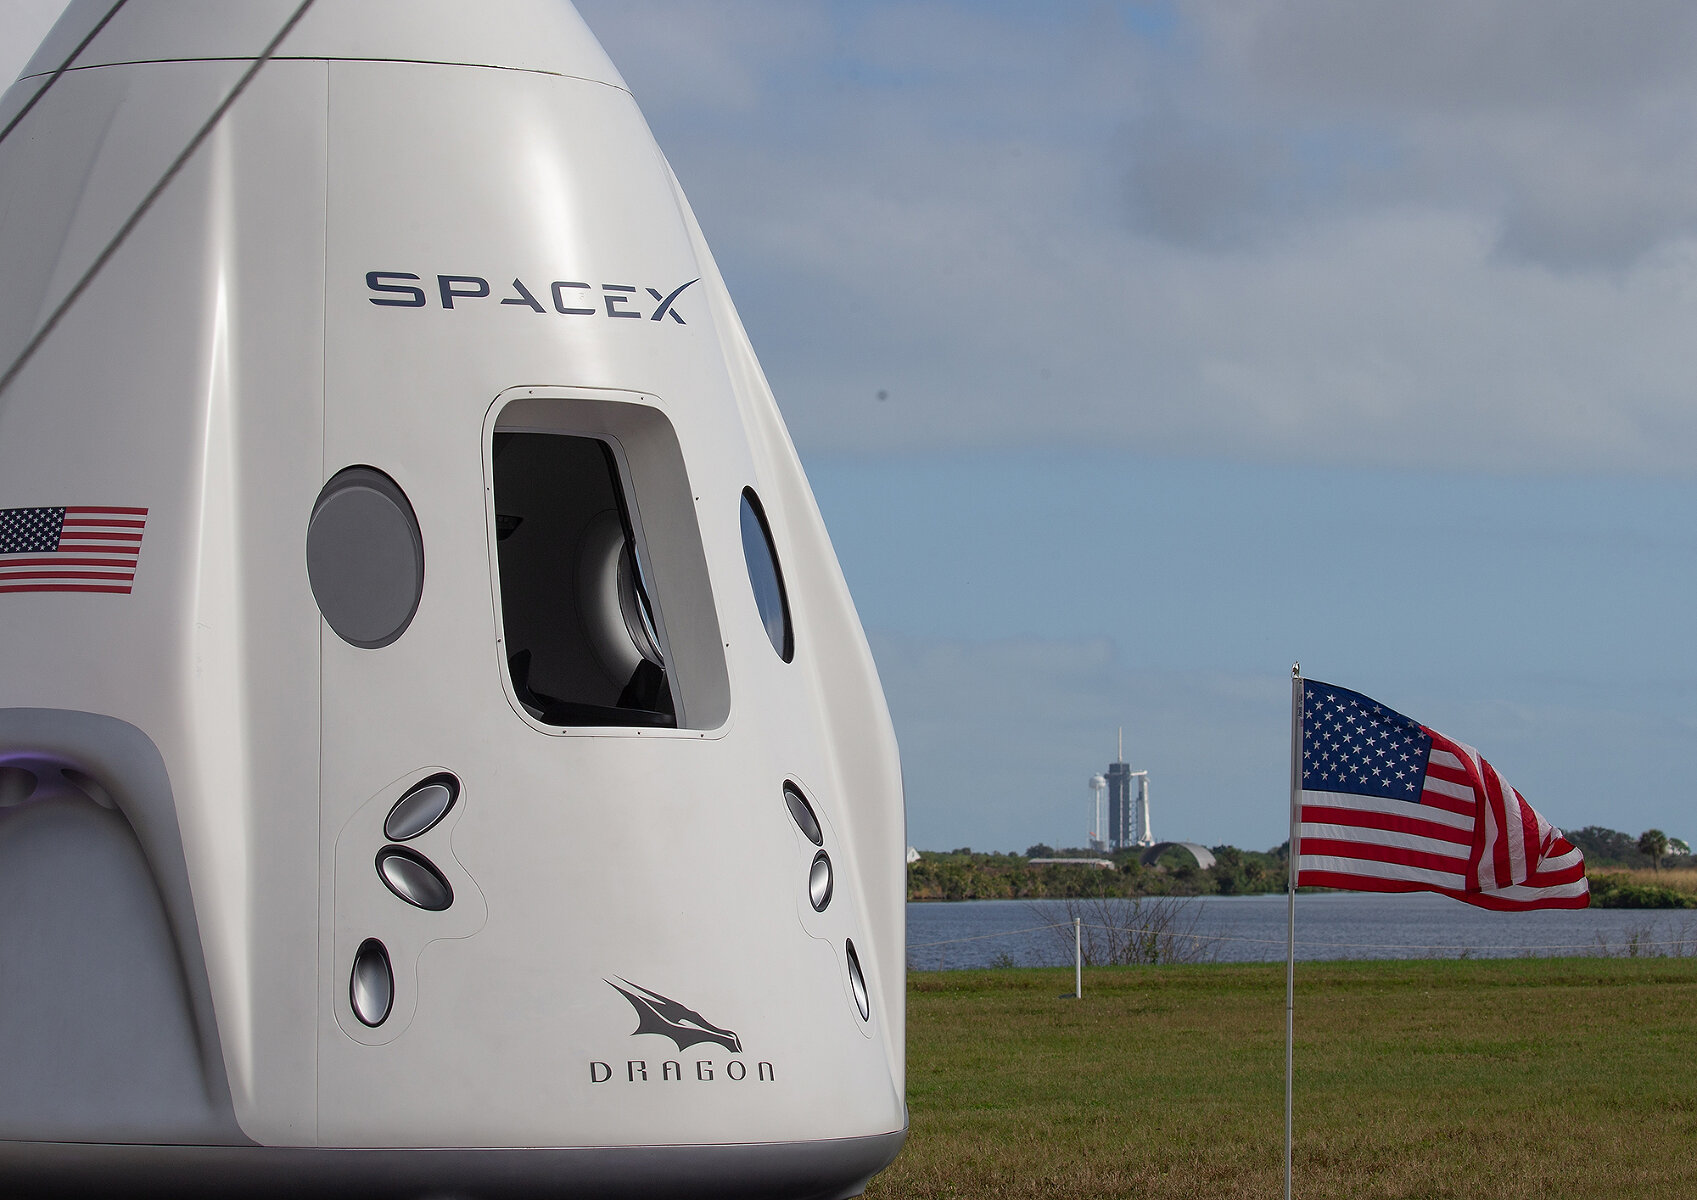 США. <p>США на примере сотрудничества NASA и SpaceX Илона Маска показали, насколько успешным может быть сращивание частного сектора и государственных программ по исследованию космоса. <strong>На фотографии&nbsp;&mdash;</strong> макет многоразового космического корабля SpaceX Crew Dragon, реальная версия которого с двумя астронавтами отправилась к МКС 30 мая 2020 года. Это был первый с момента прекращена программы&nbsp;полетов многоразовых шаттлов в 2011 года&nbsp;пилотируемый&nbsp;корабль, запущенный&nbsp;из США. До этого астронавтов на МКС доставляли российские&nbsp;&laquo;Союзы&raquo;. Dragon также&nbsp;стал первым в истории запуском, осуществленным частной космической компанией. На пресс-конференции по итогам успешного запуска Маск <a href="https://tvrain.ru/news/batut_rabotaet_ilon_mask_otvetil_na_shutku_rogozina_posle_zapuska_crew_dragon_k_mks-509807/" target="_blank">сказал&nbsp;</a>&laquo;Батуты работают&raquo;, ответив на слова Рогозина, который в 2014 году&nbsp;допустил отказ доставлять американских астронавтов на МКС и предложил доставлять их на МКС с помощью батутов.&nbsp;</p>